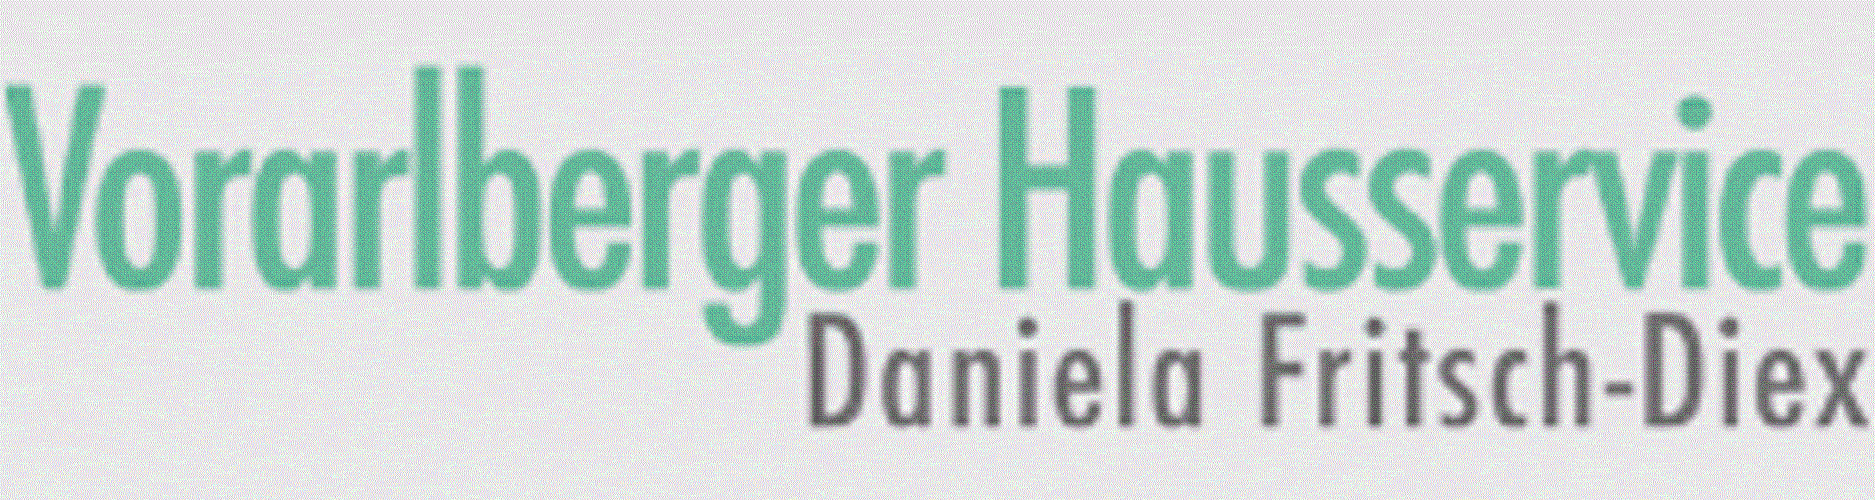 Logo Vorarlberger Hausservice - Daniela Fritsch-Diex